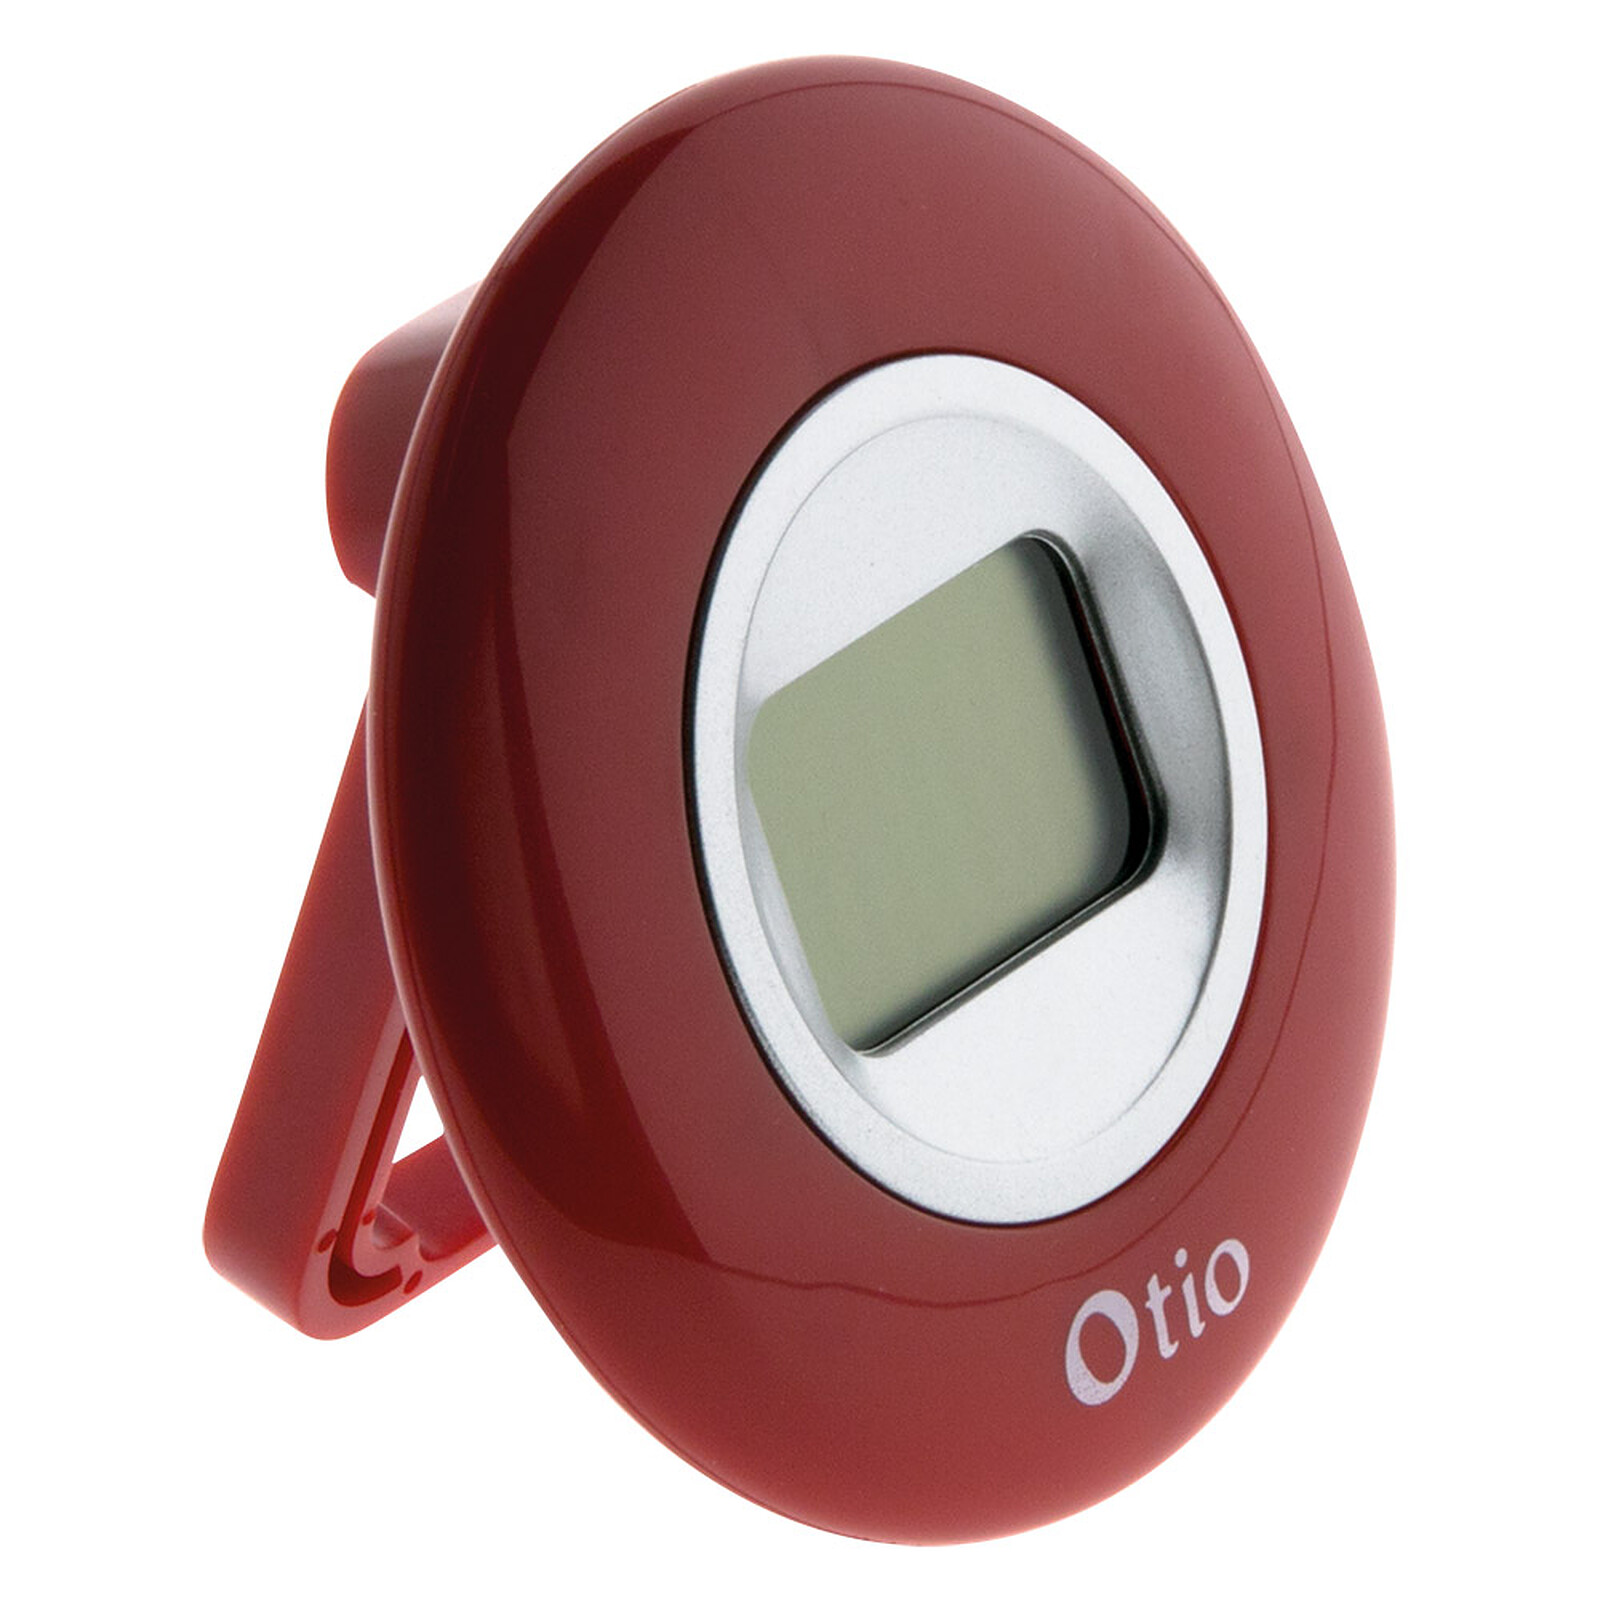 Thermomètre / Hygromètre int/ext Bluetooth 4.0 avec capteur filaire - Otio  - Station Météo - LDLC